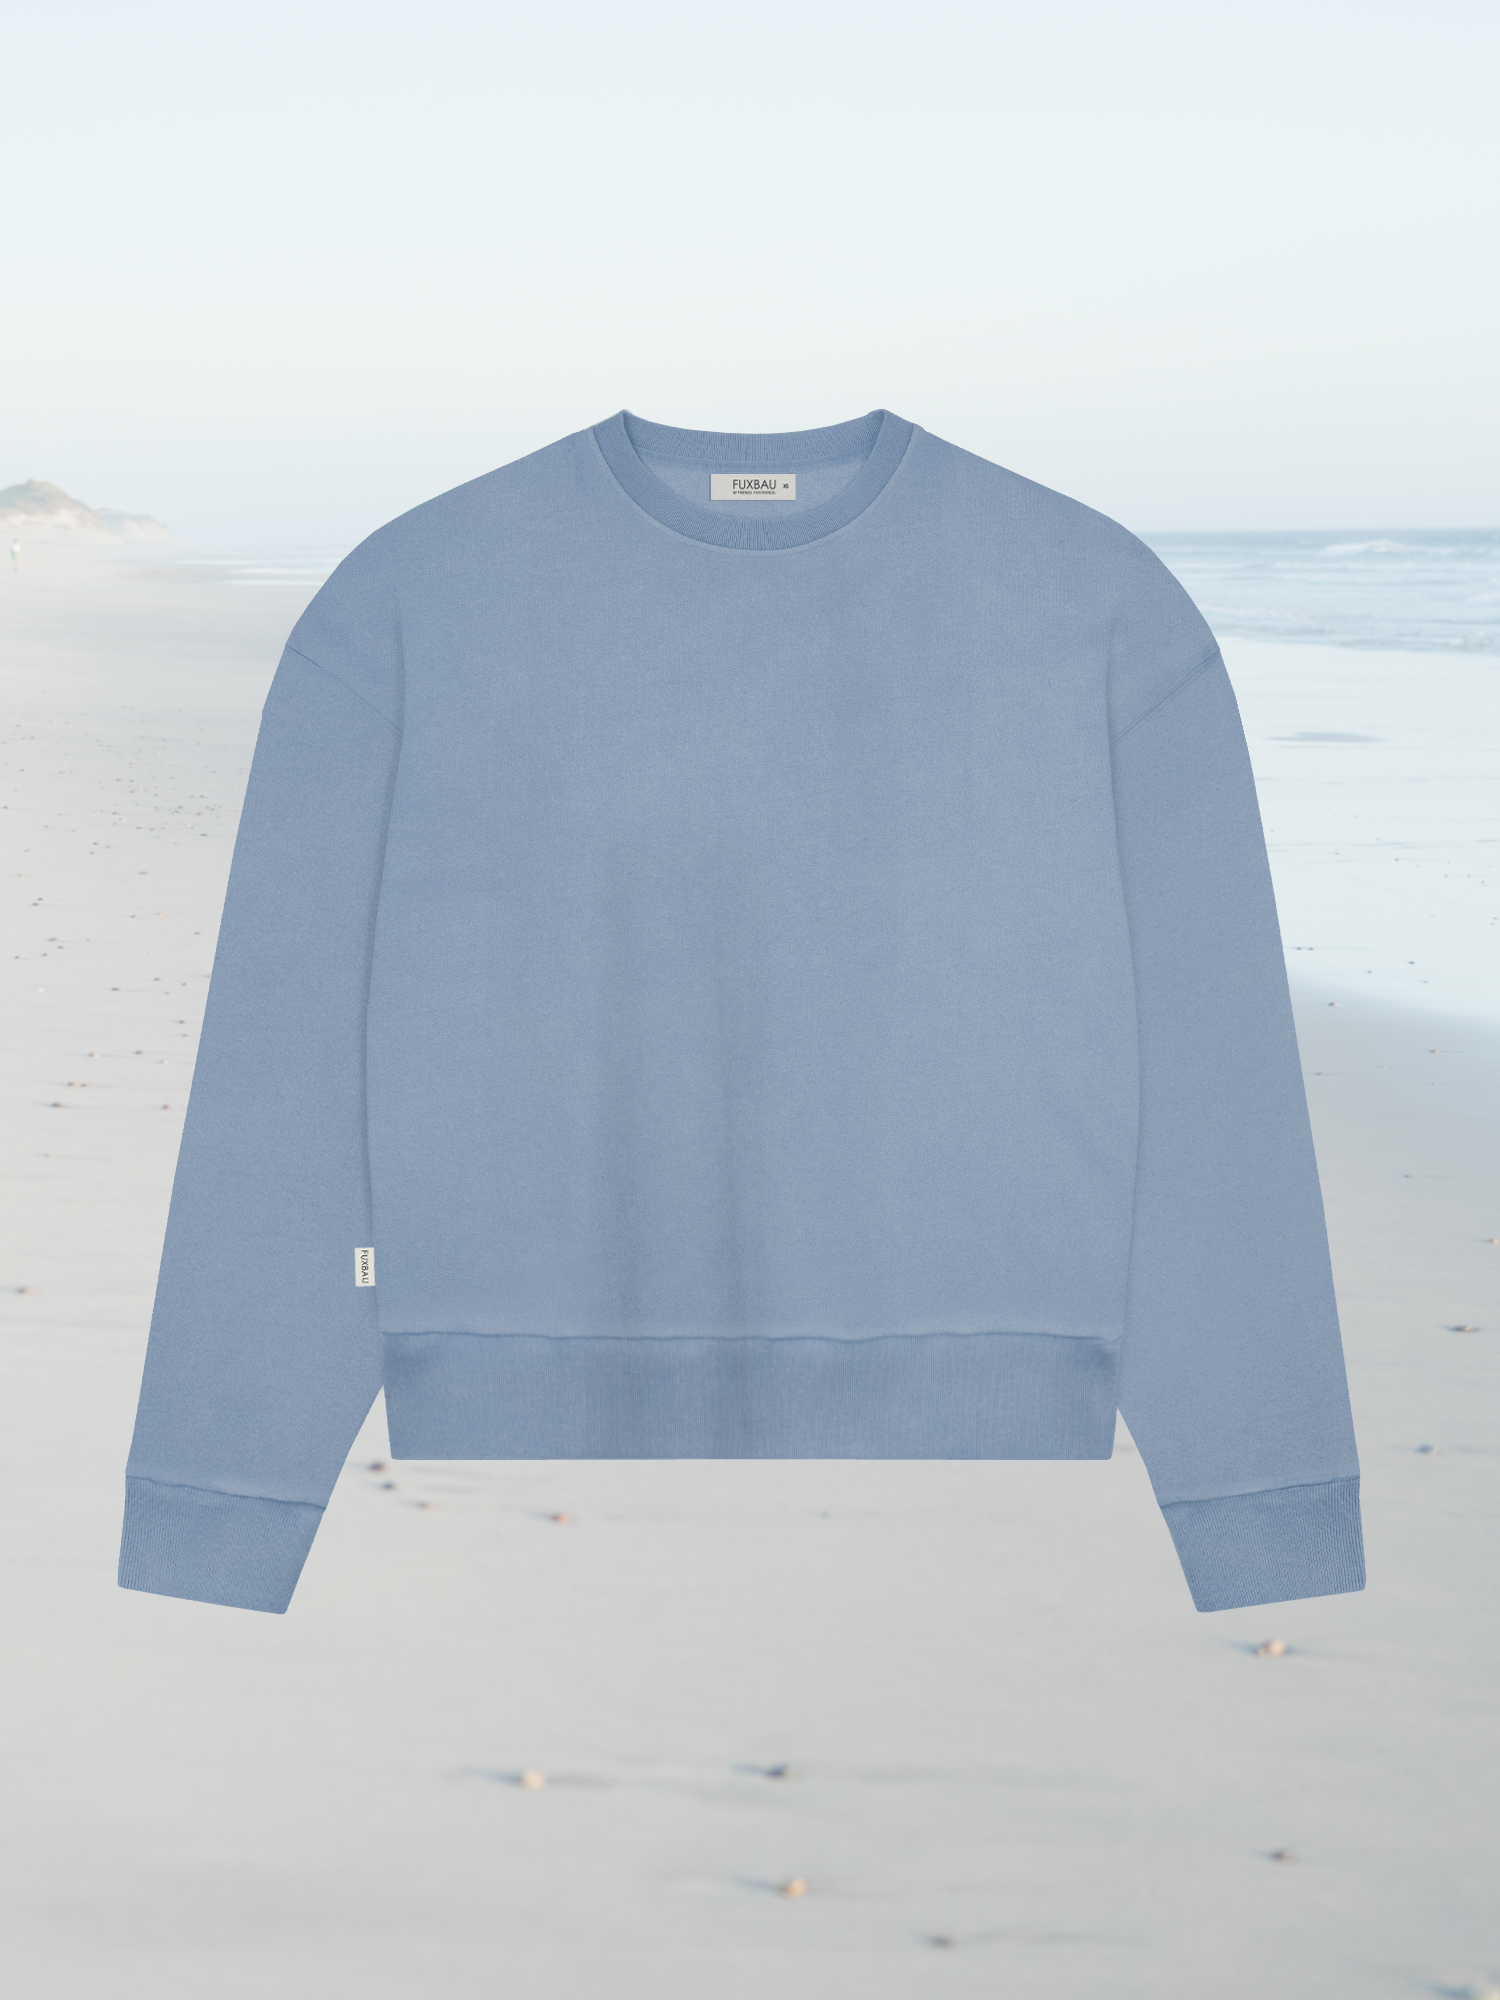 Inspiration für einen nachhaltigen Fair Fashion FUXBAU Frauen oversize Pullover in blau.